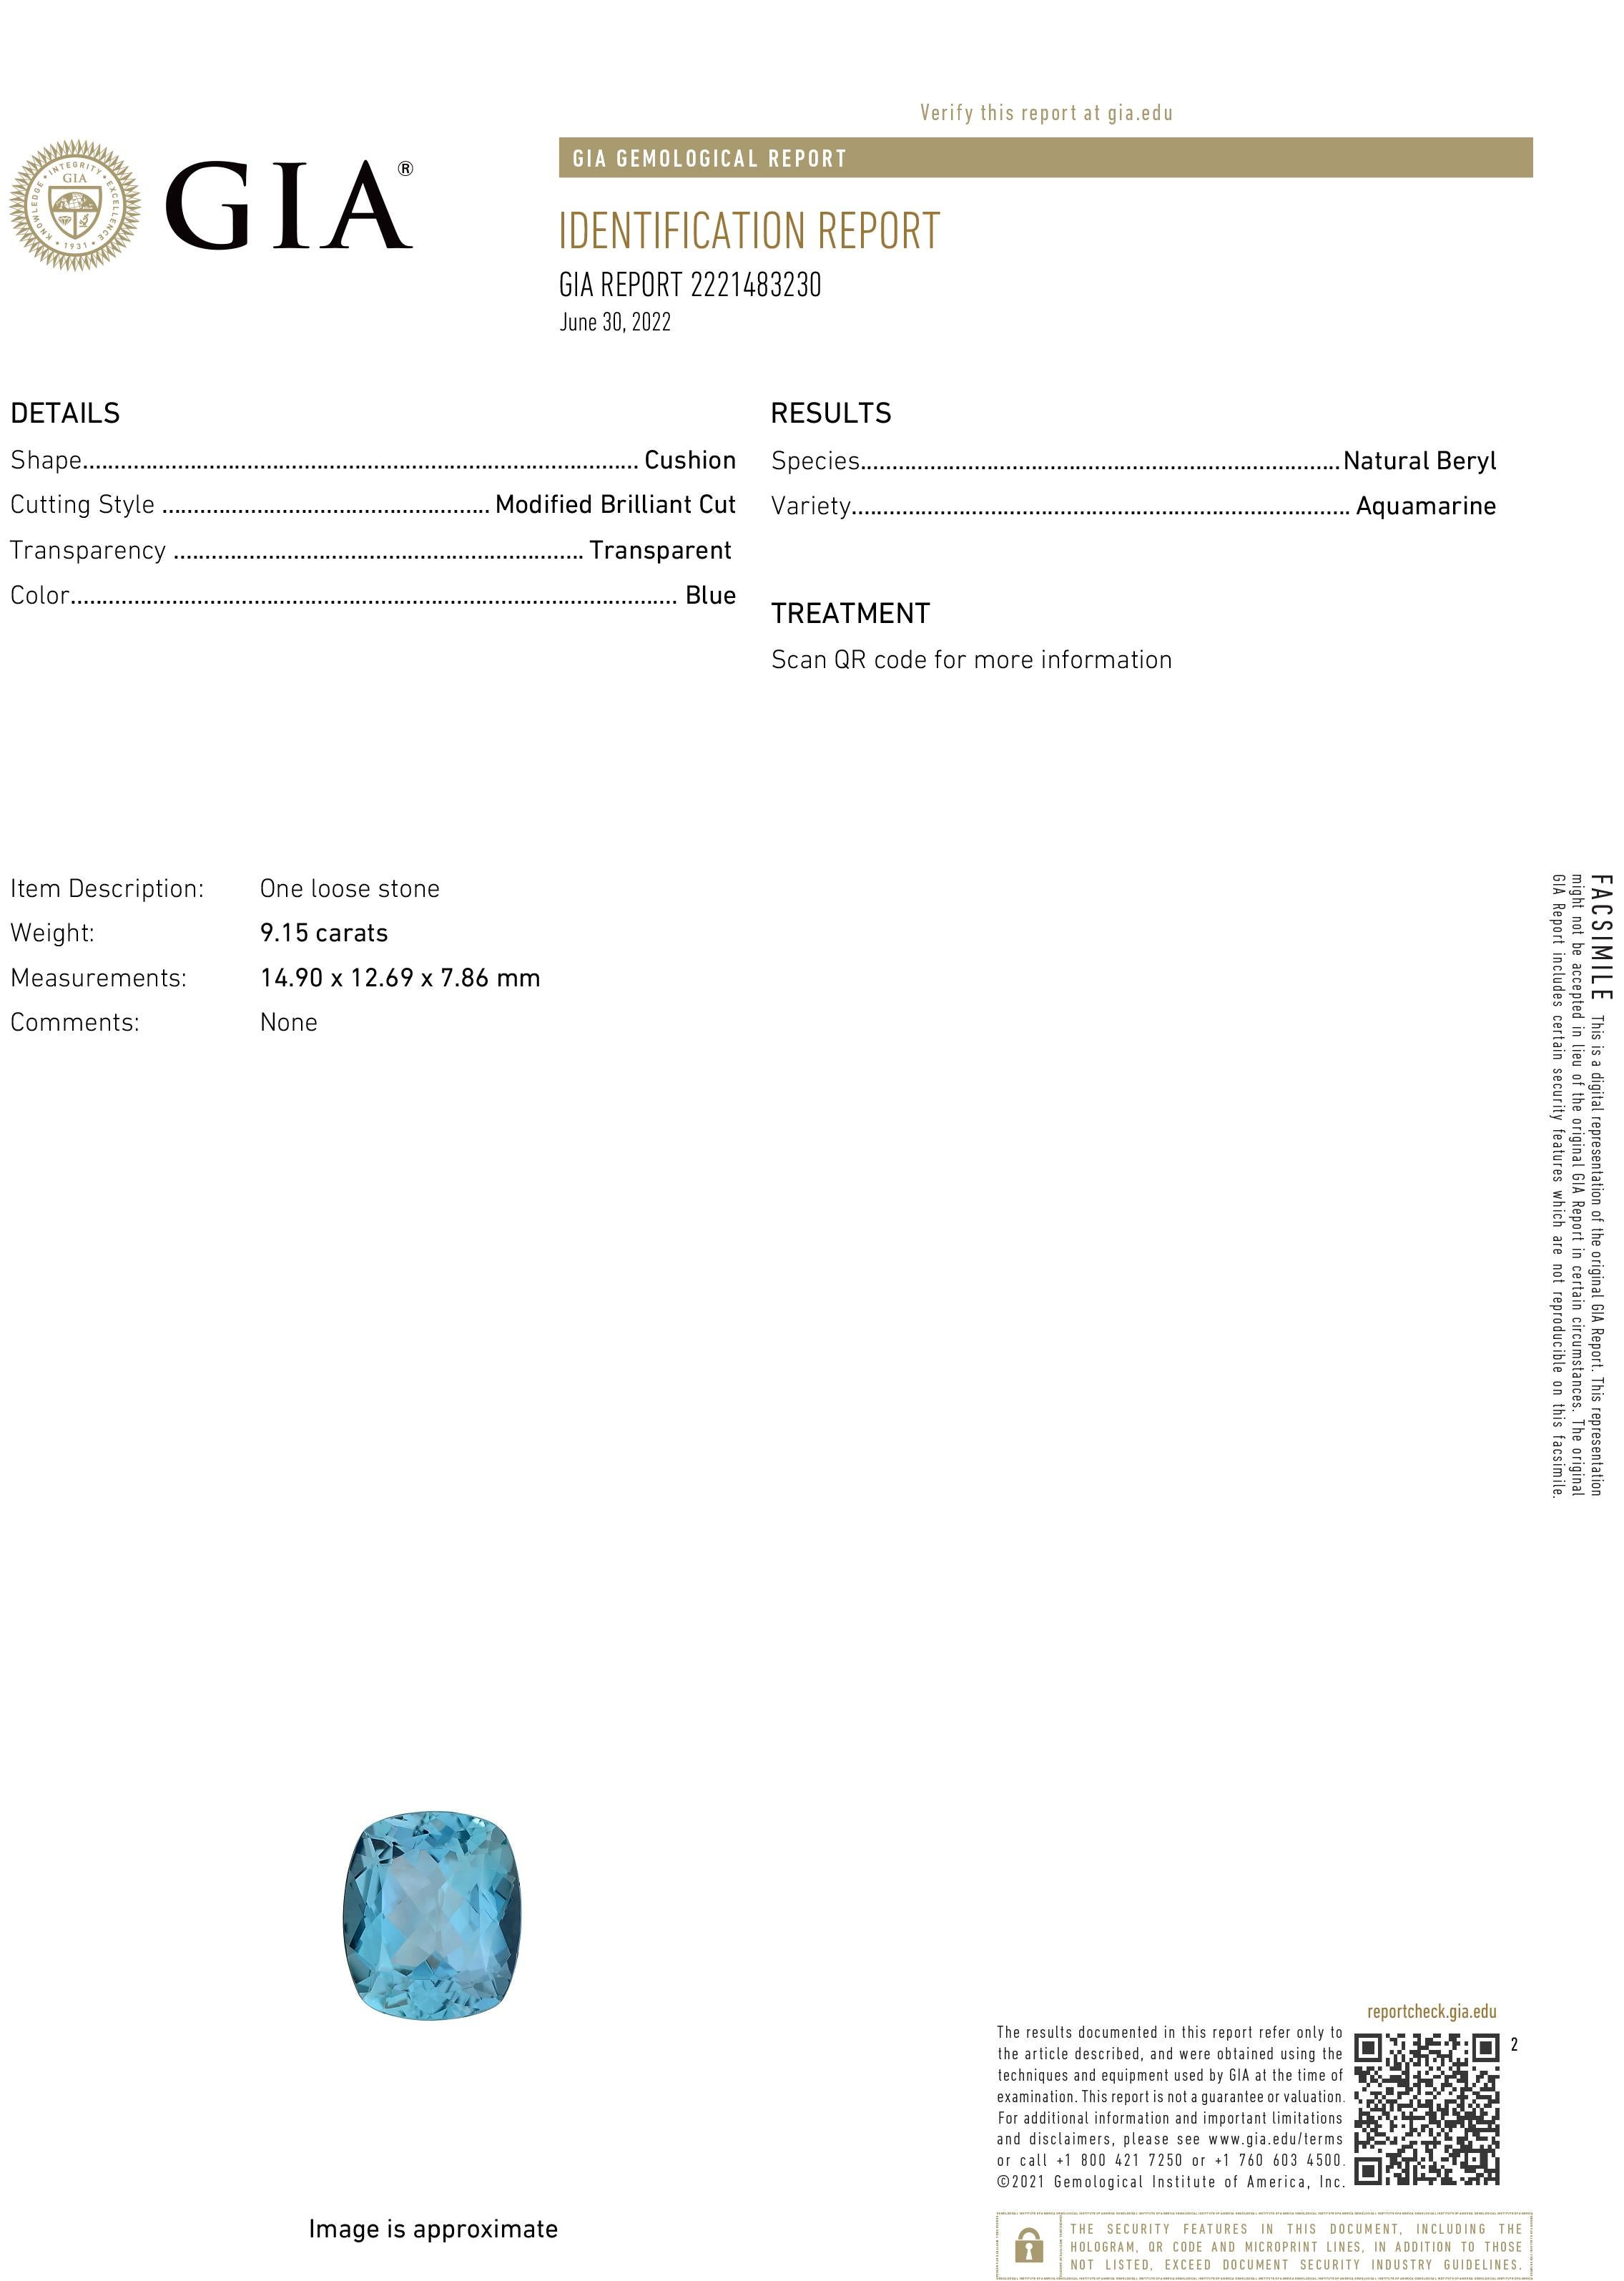 Exceptionnelle bague solitaire intemporelle présentant une superbe aigue-marine bleue transparente naturelle à taille coussin, d'origine brésilienne Santa Maria, de 9,15 carats (14,9 x 12,69 x 7,86 mm), dans une monture chic de 0,43 carats en or